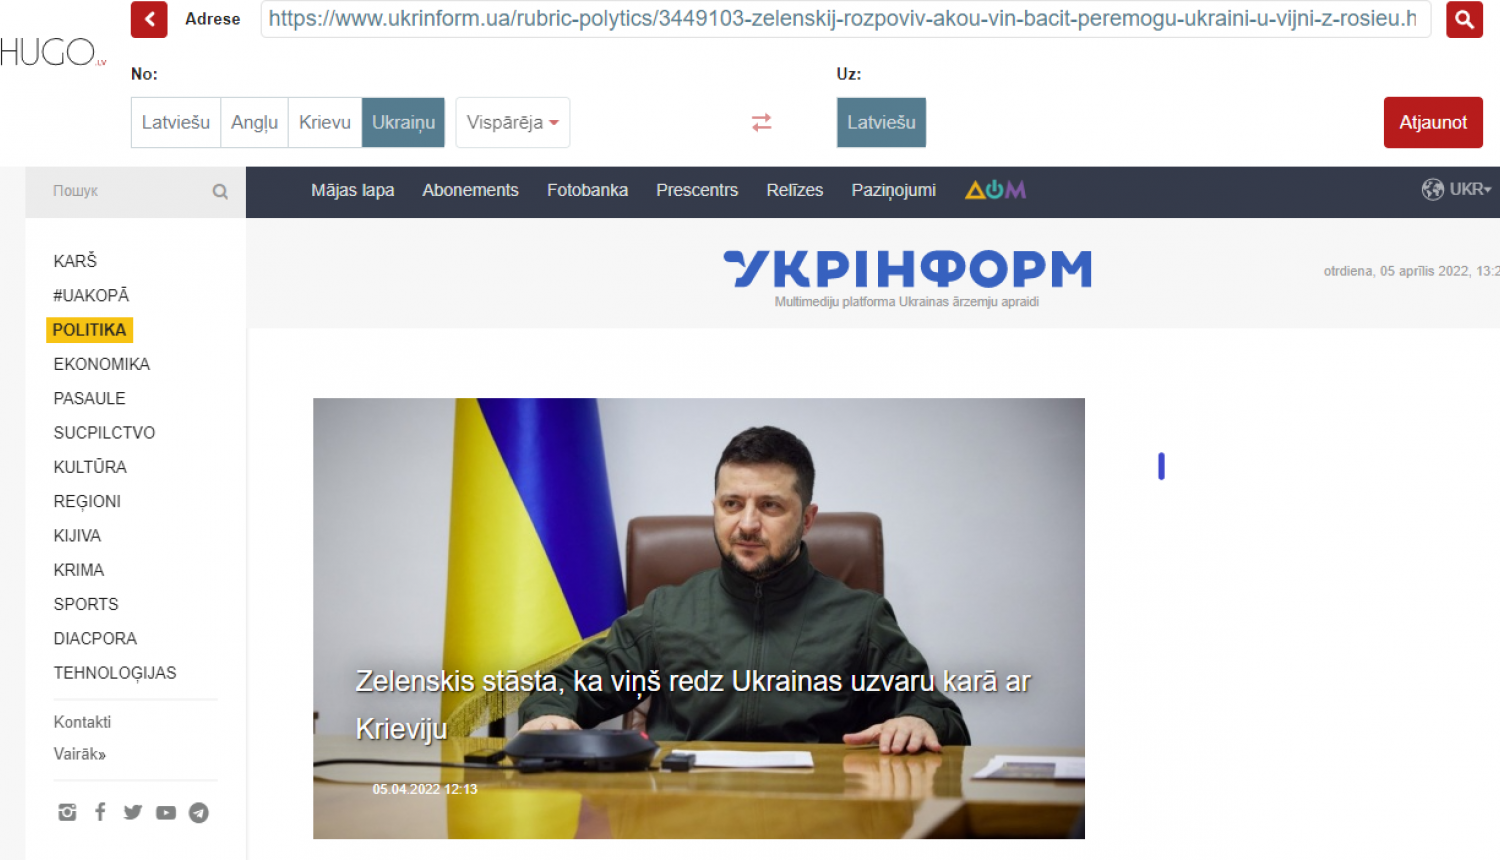 Hugo.lv platformā automātiski iztulkota Ukrainas ziņu medija Ukraininform mājaslapa